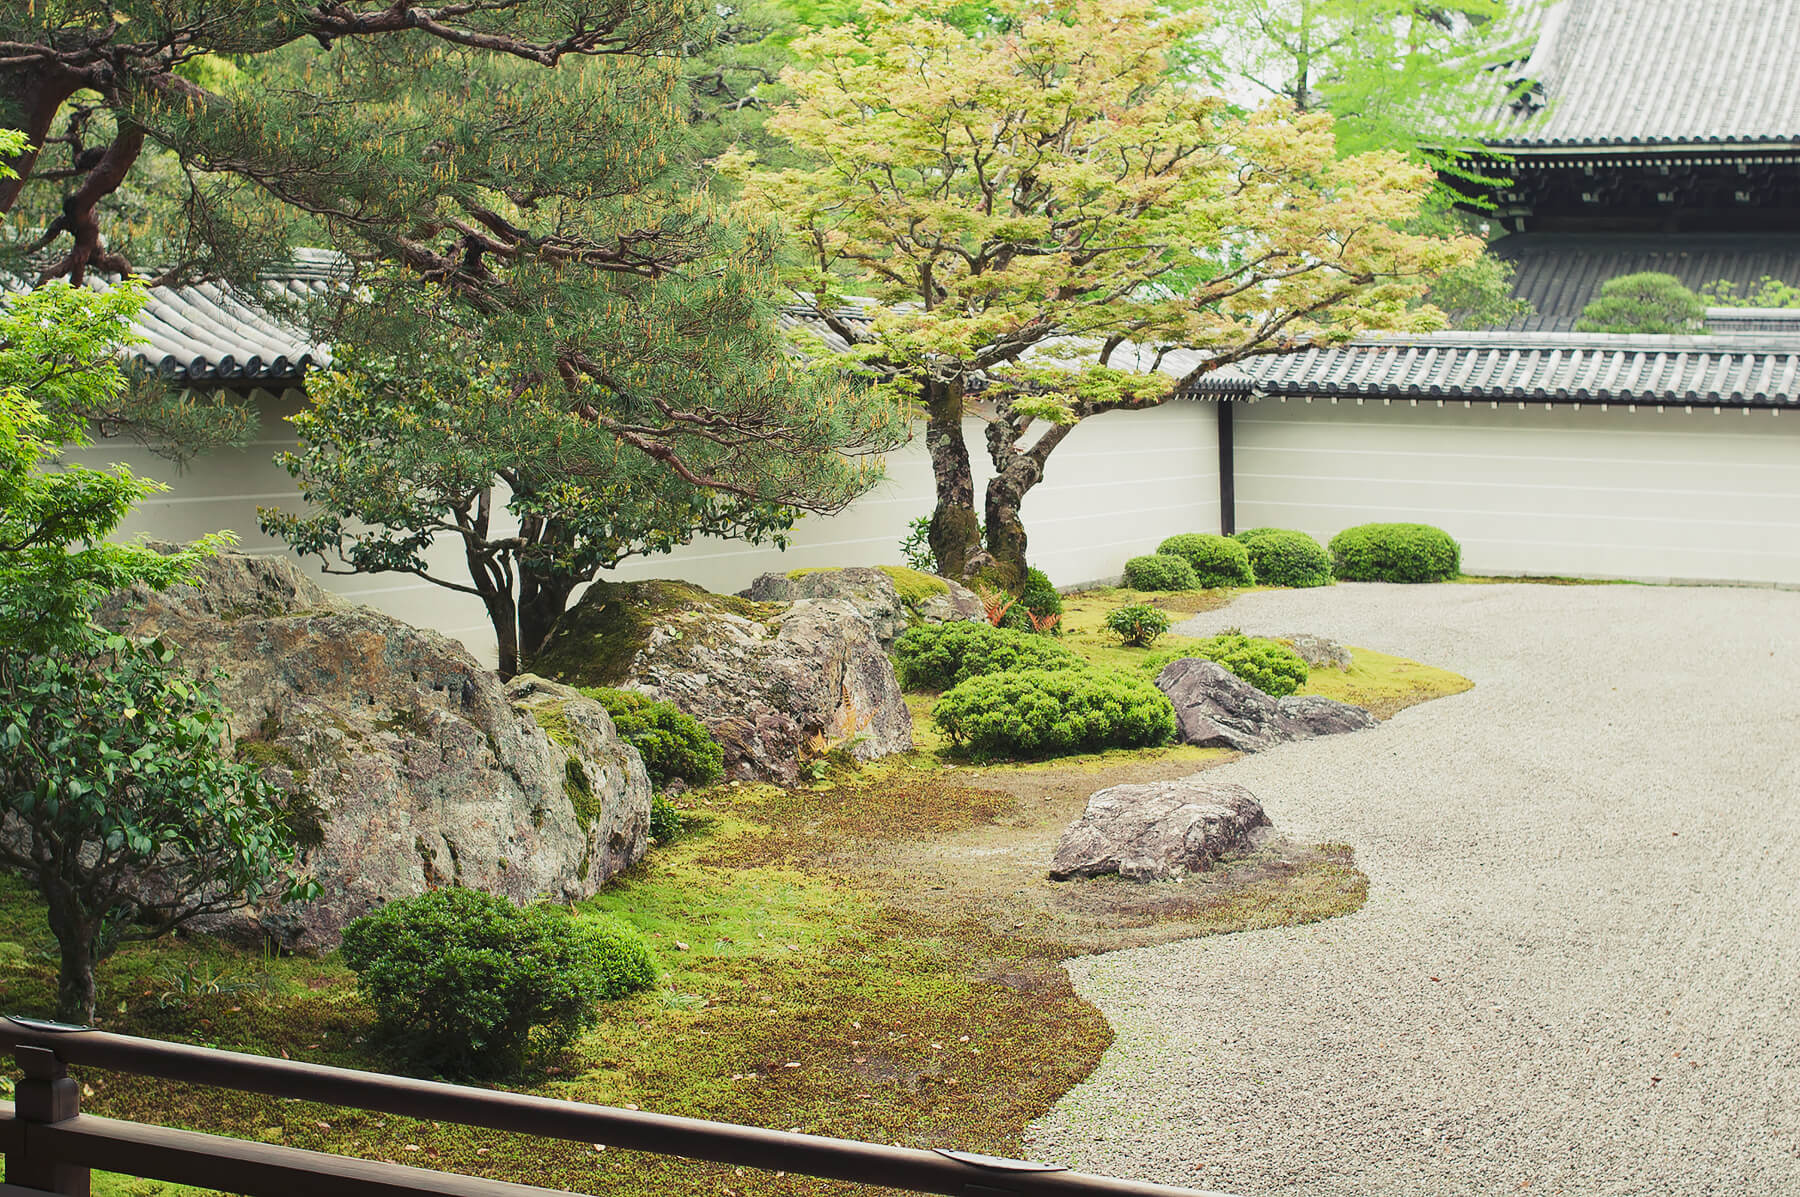 
          京都「南禅寺本坊」の庭園写真2
      